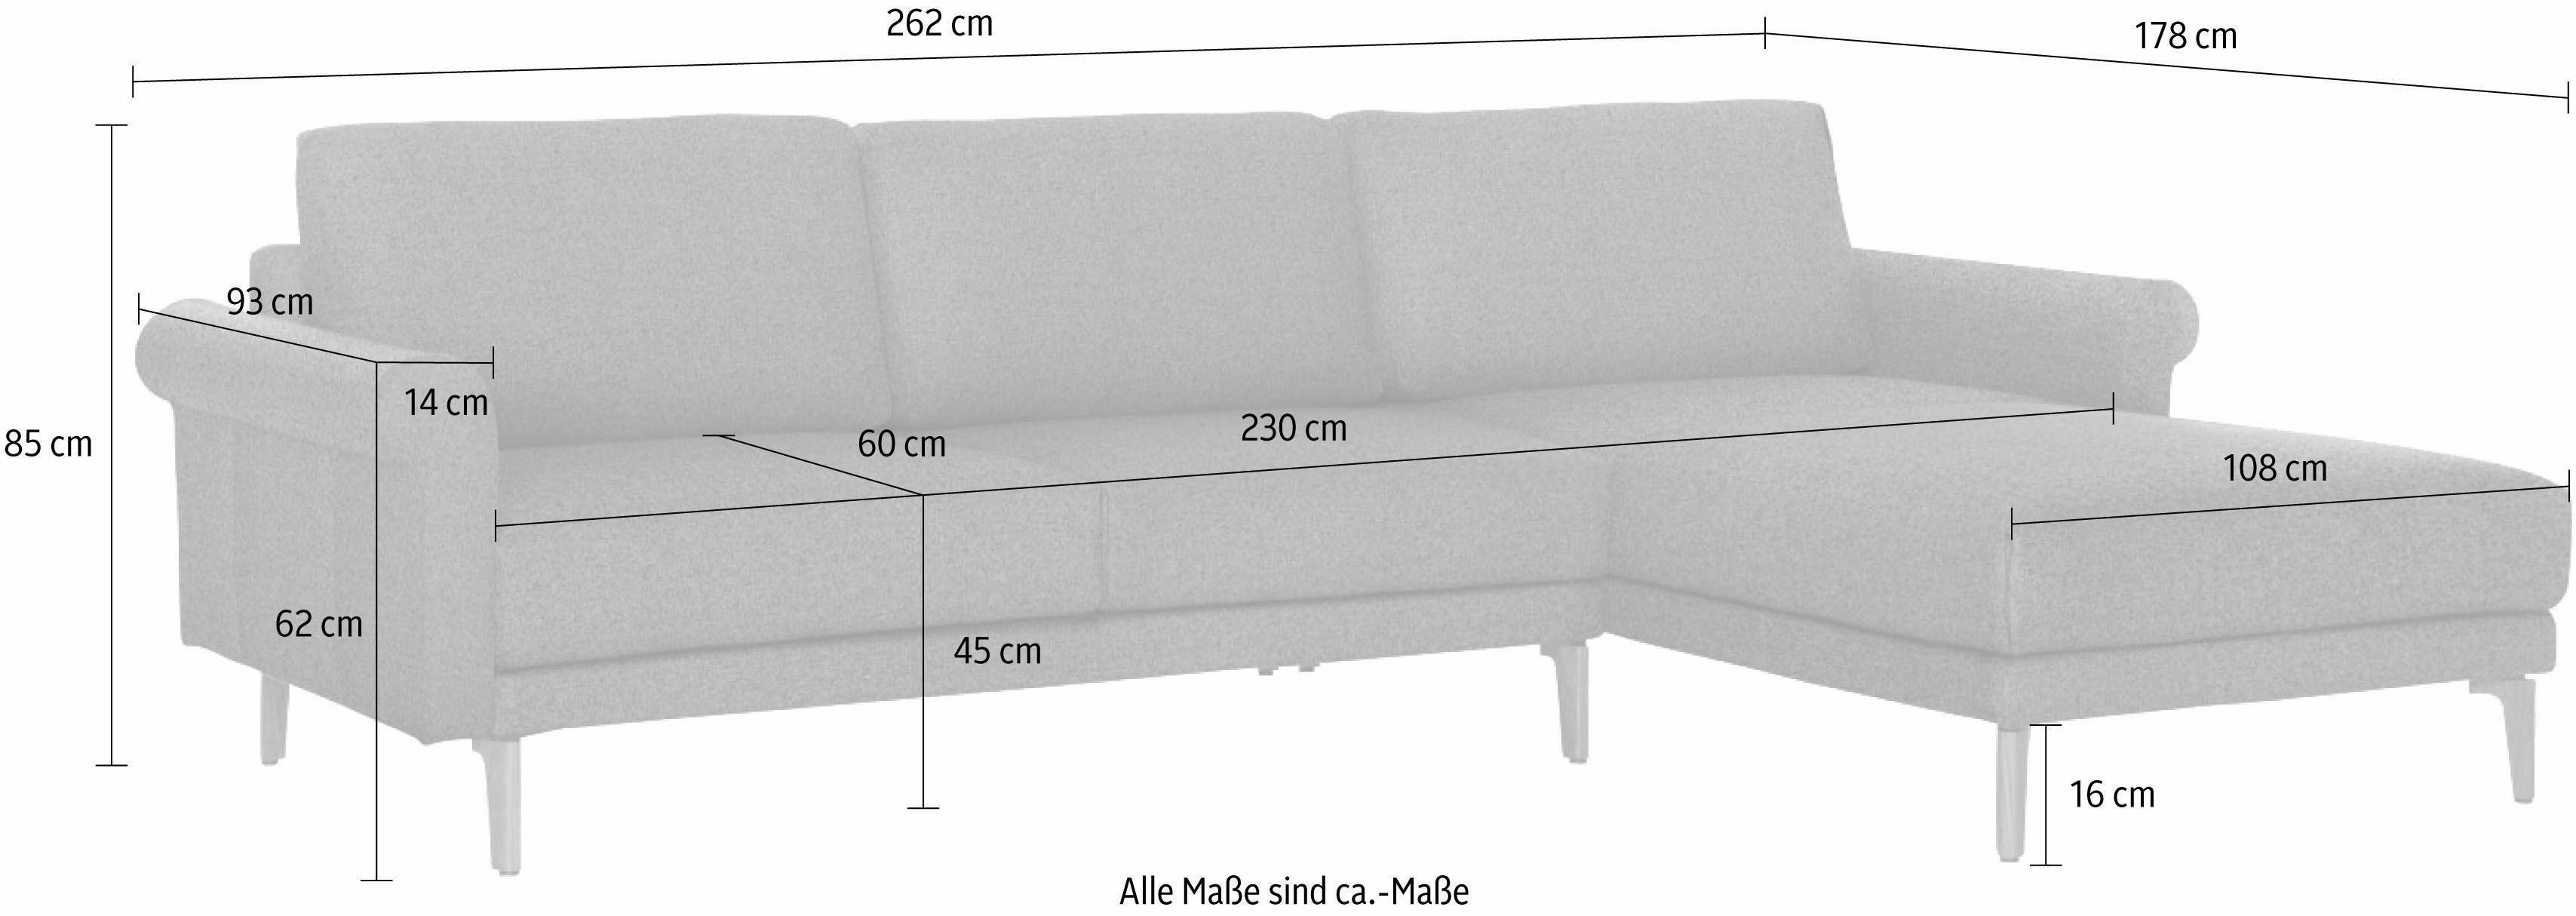 Breite cm, modern Landhaus, Nussbaum 262 Ecksofa hülsta Fuß Armlehne sofa Schnecke hs.450,